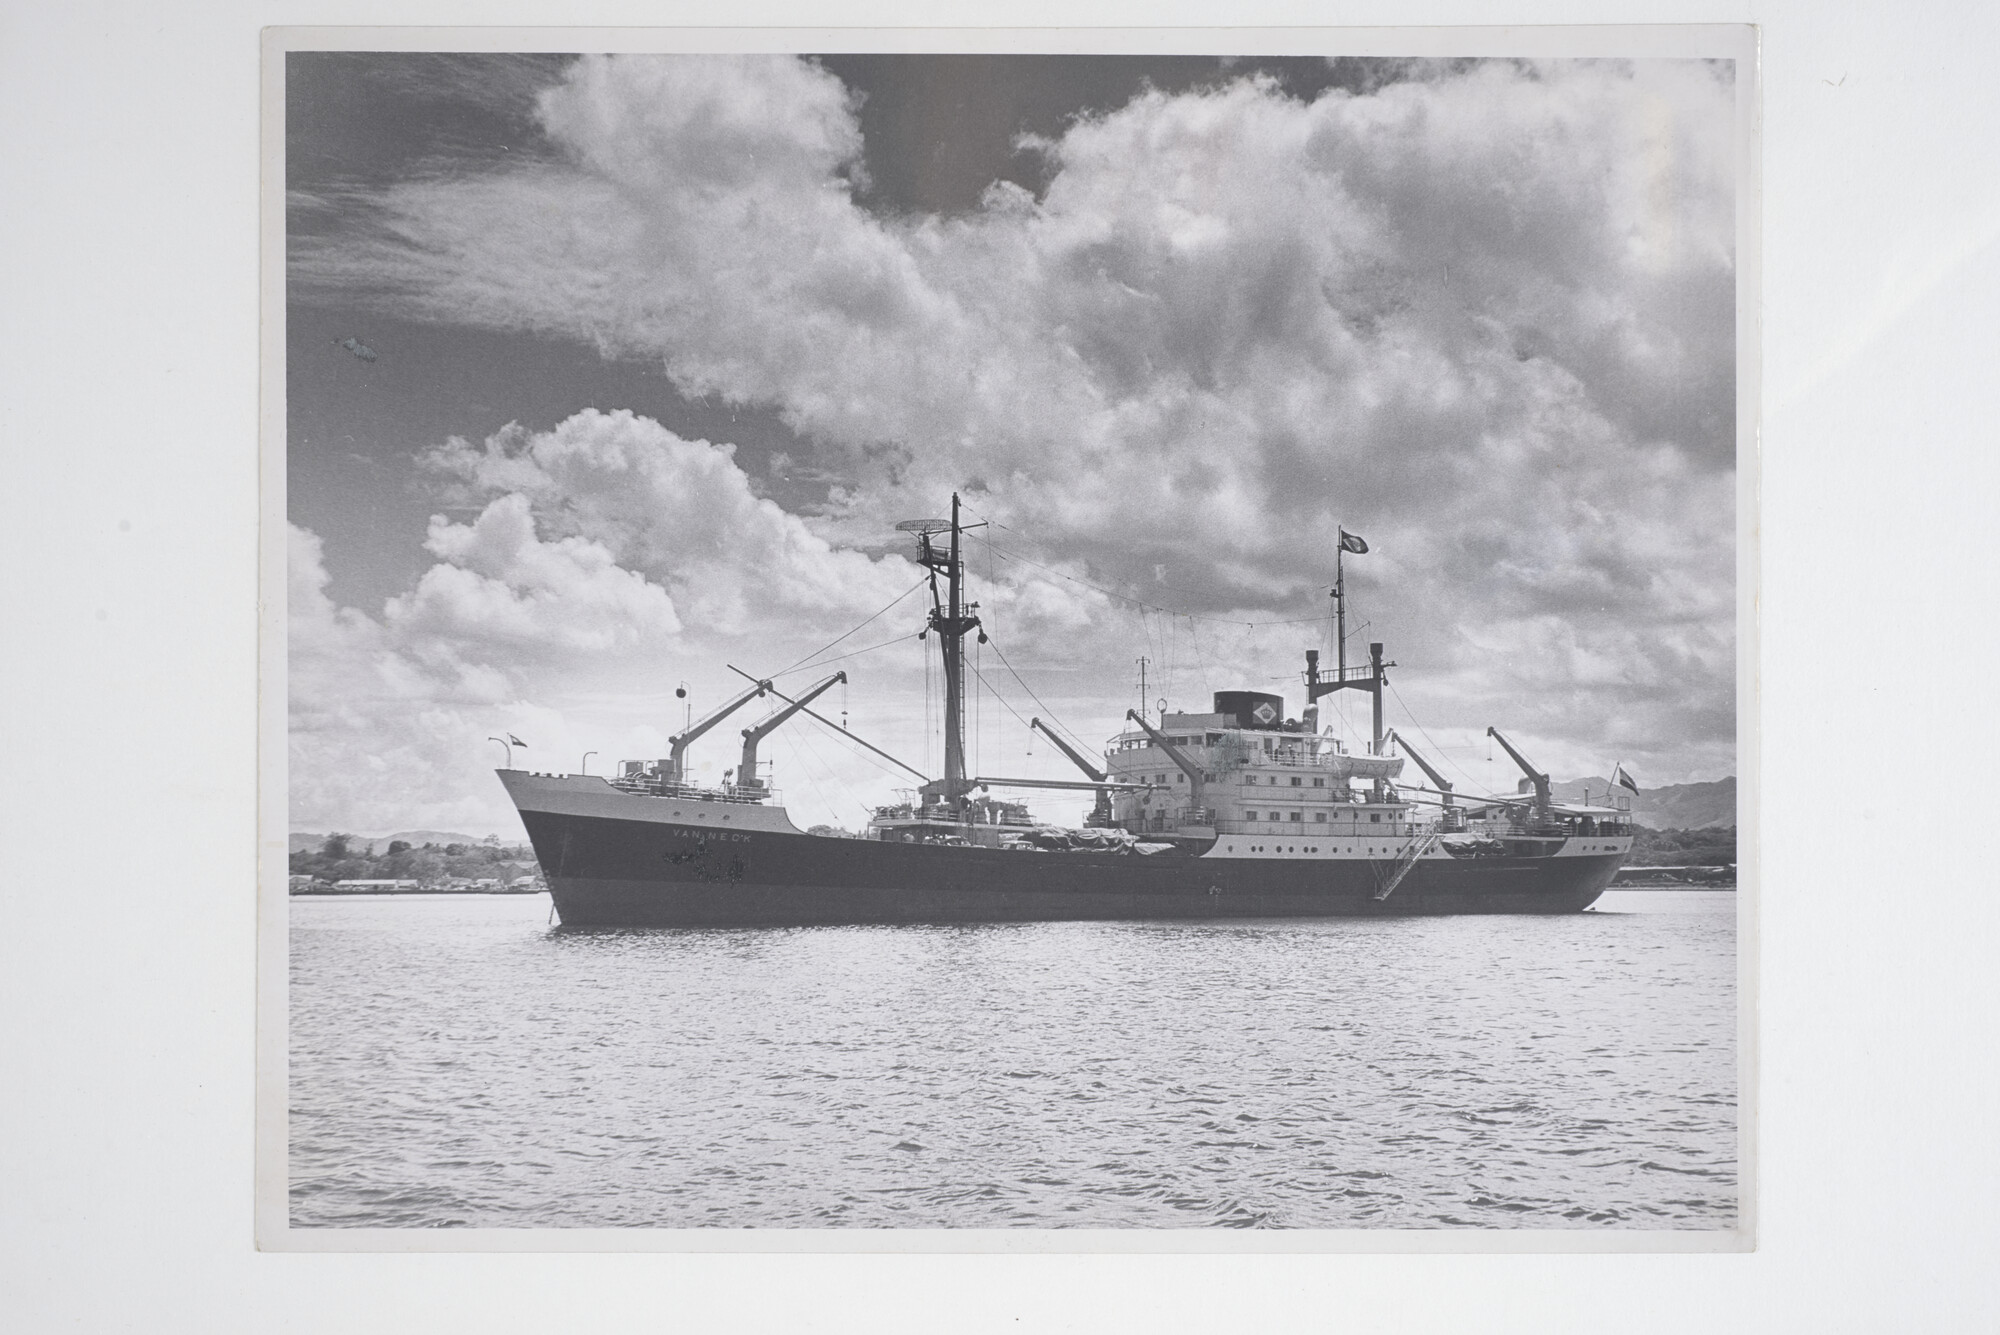 2014.0432; Zwart-wit foto van ms. Van Neck voor anker voor een kust; foto